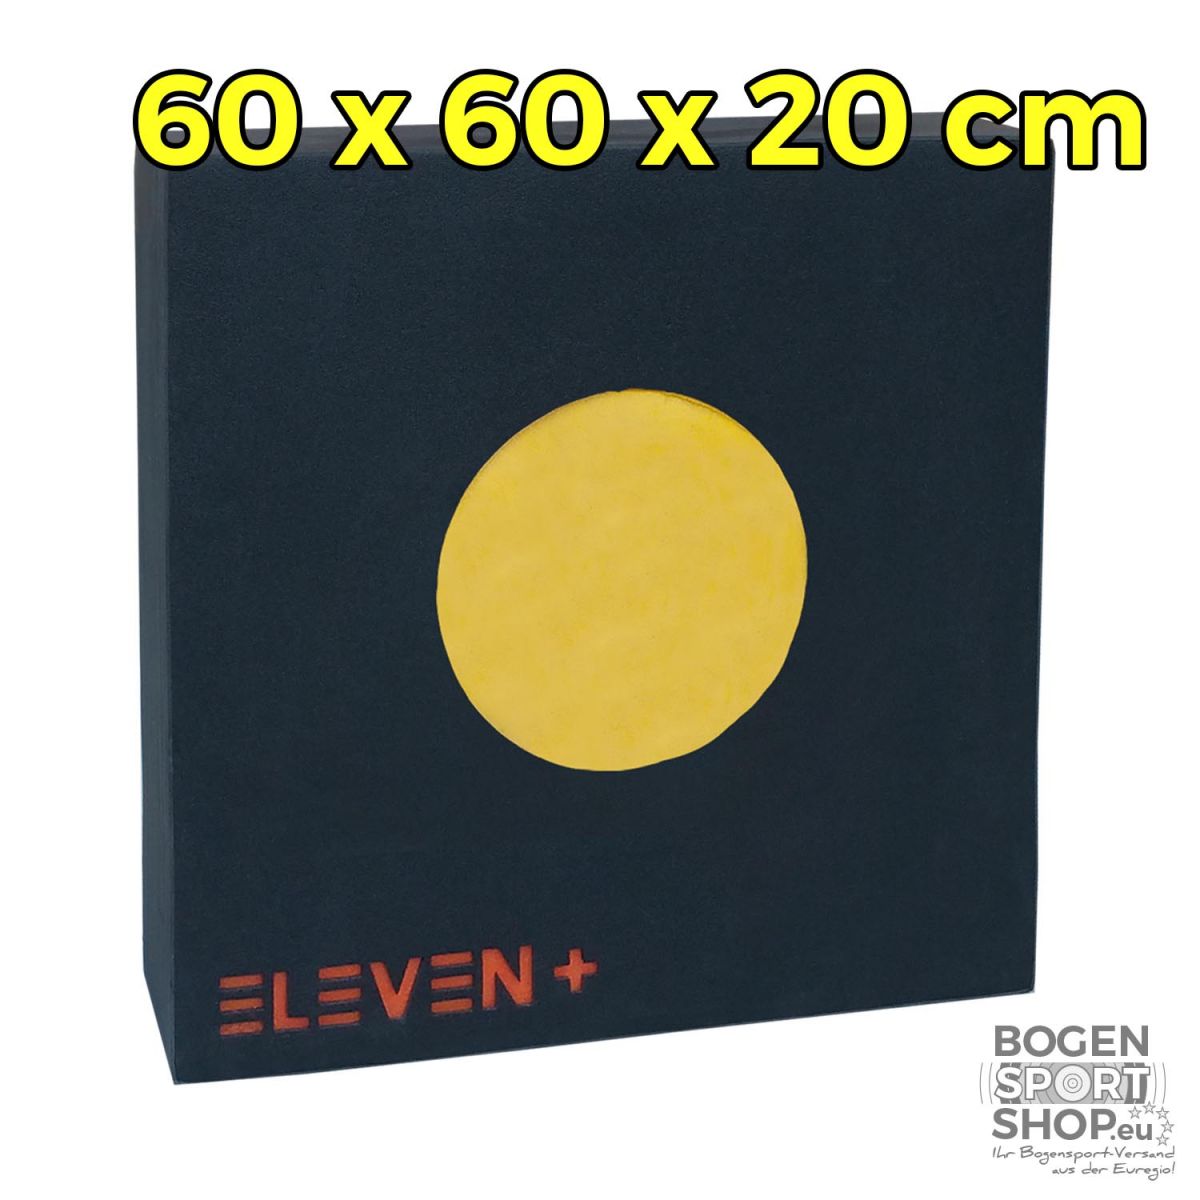 Eleven Plus 60 x 60 x 20 cm mit EZ-Pull Wechselmitte 24,5 cm